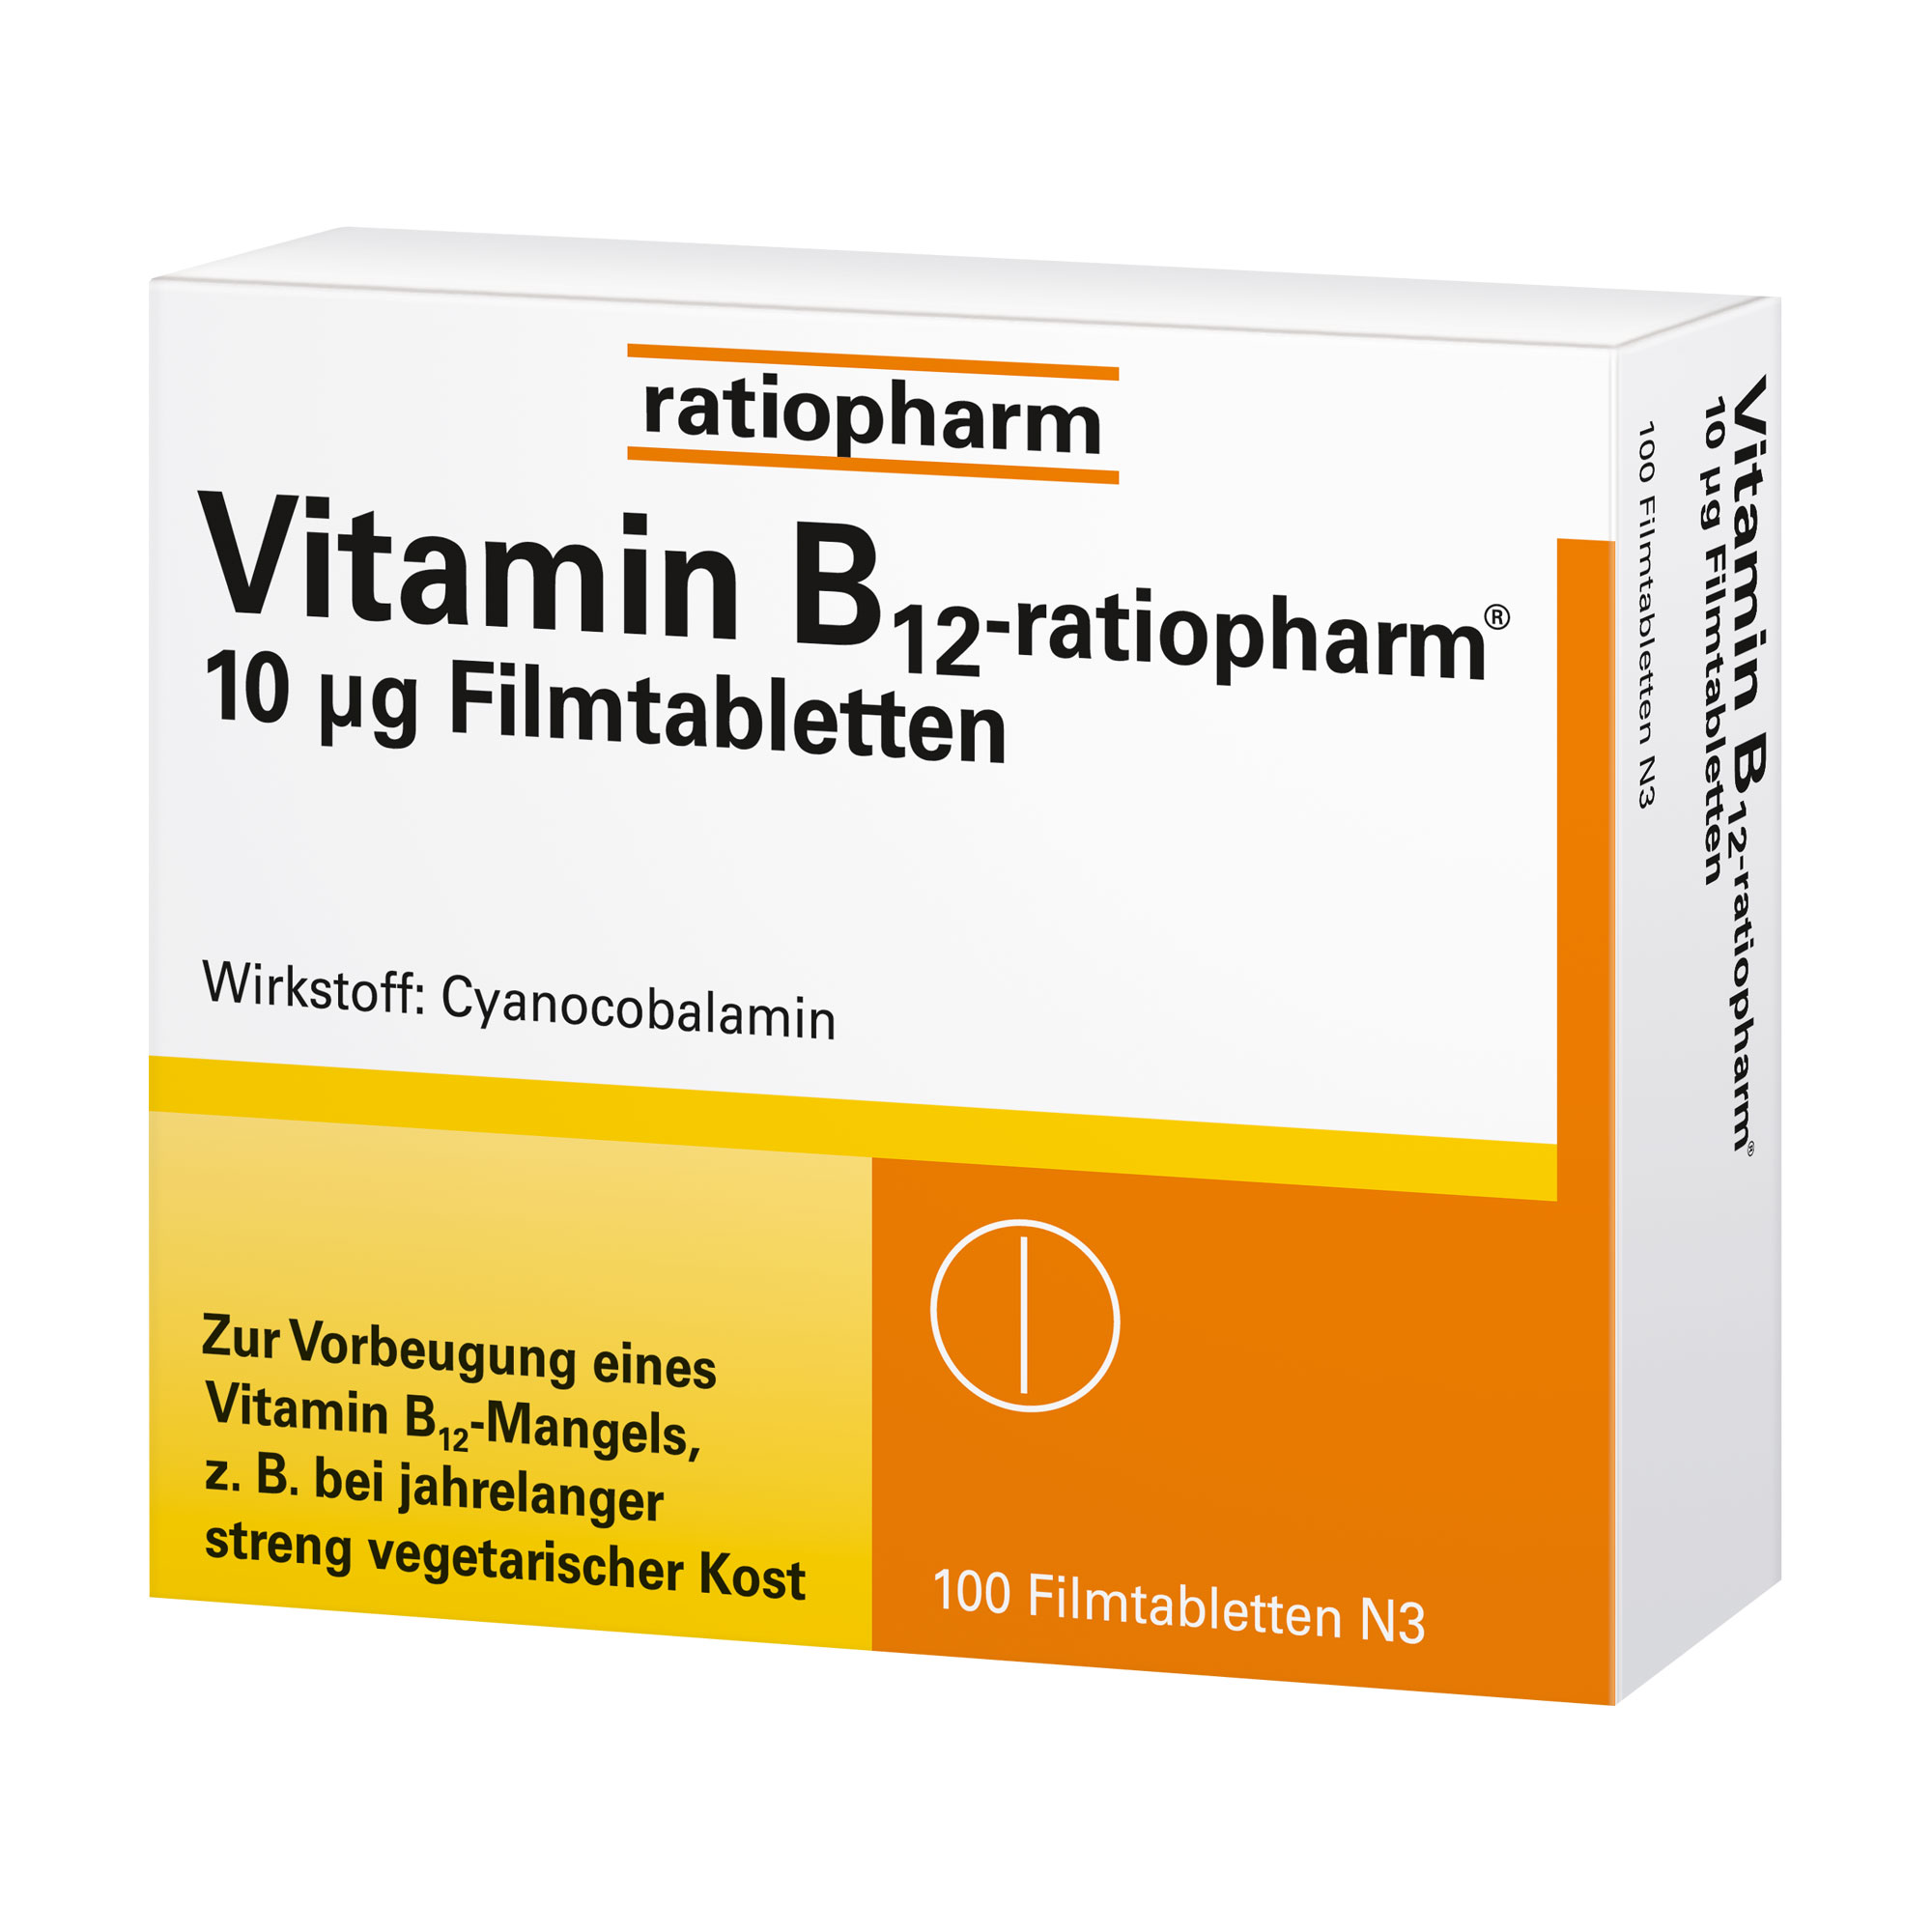 Beugt einem Vitamin B12 Mangel vor. Vitamin B12 fördert ein normales Immunsystem und wirkt Müdigkeit und Erschöpfung entgegen.